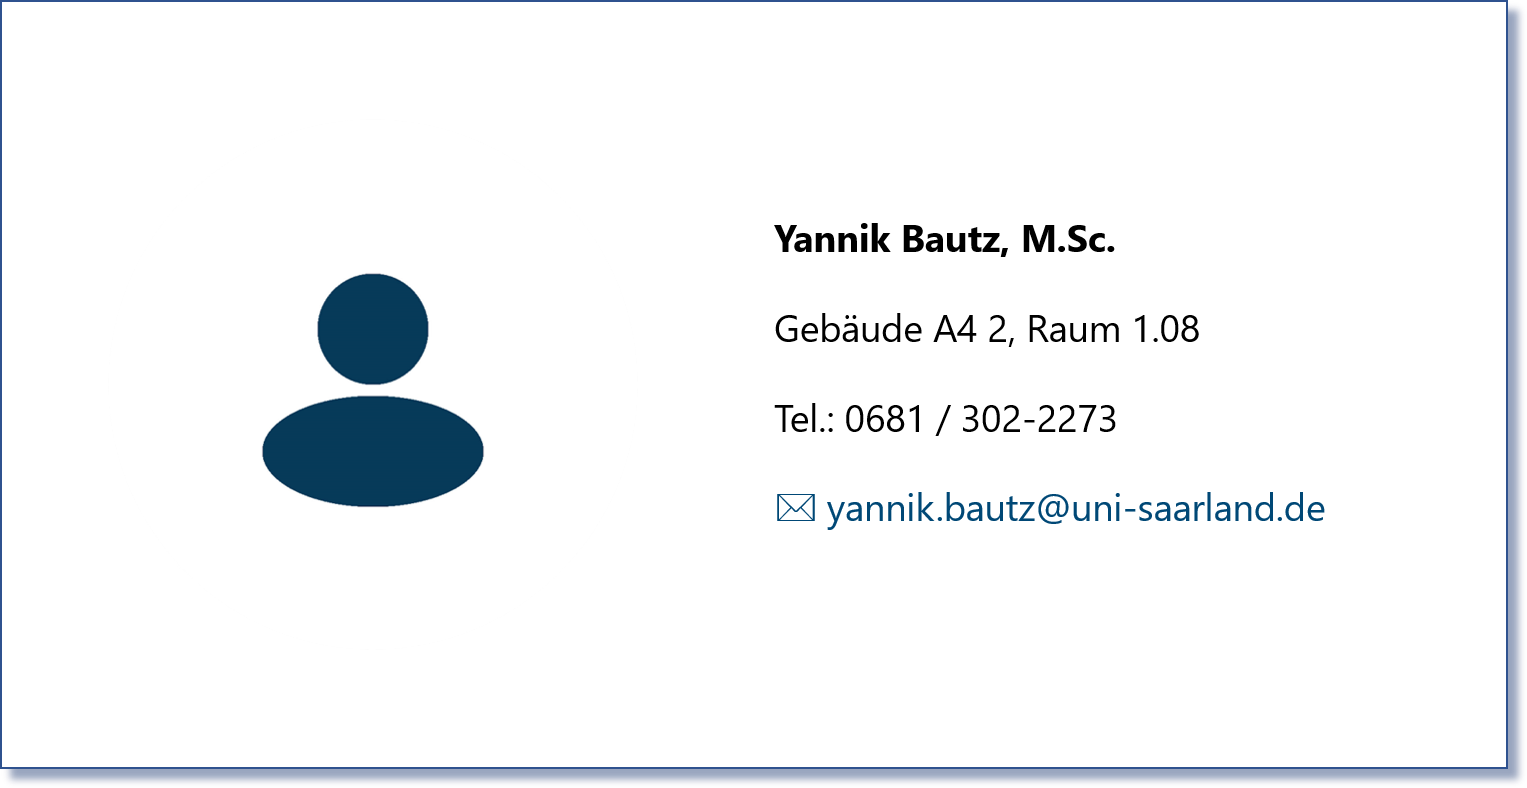 Yannik Bautz, M.Sc.